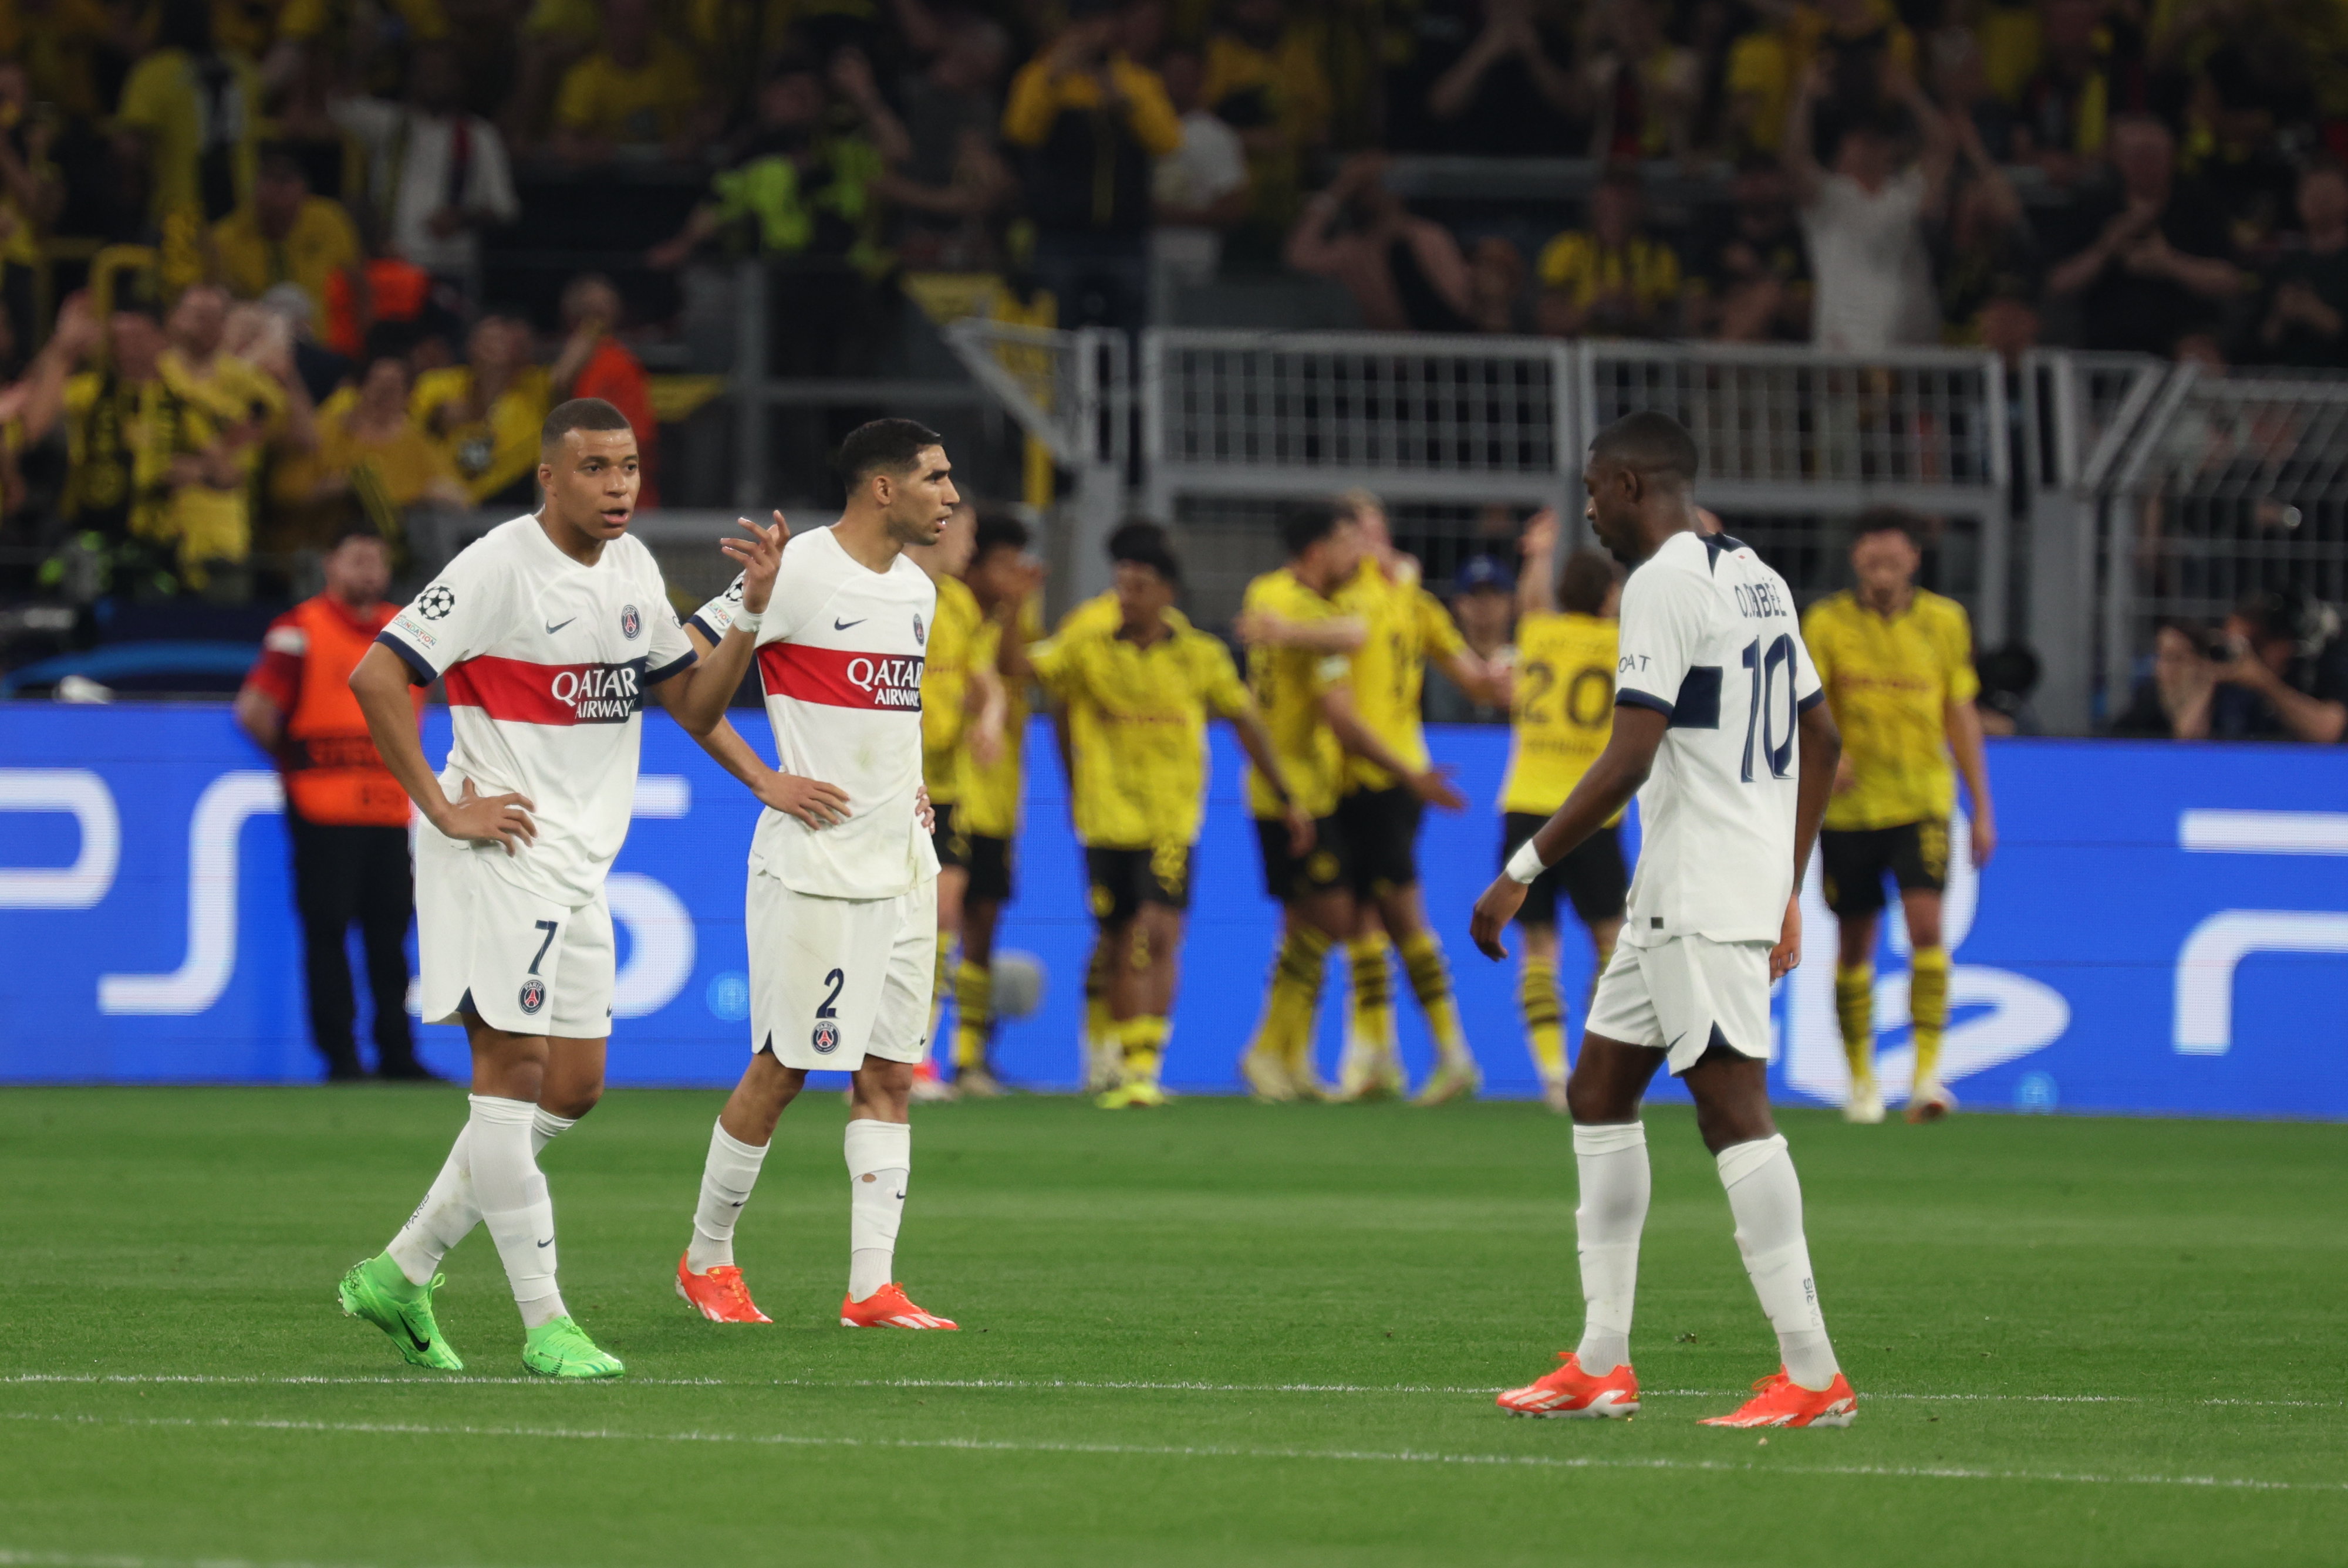 Les Parisiens n'ont pas trouvé les solutions mercredi soir face au Borussia Dortmund. LP/Arnaud Journois